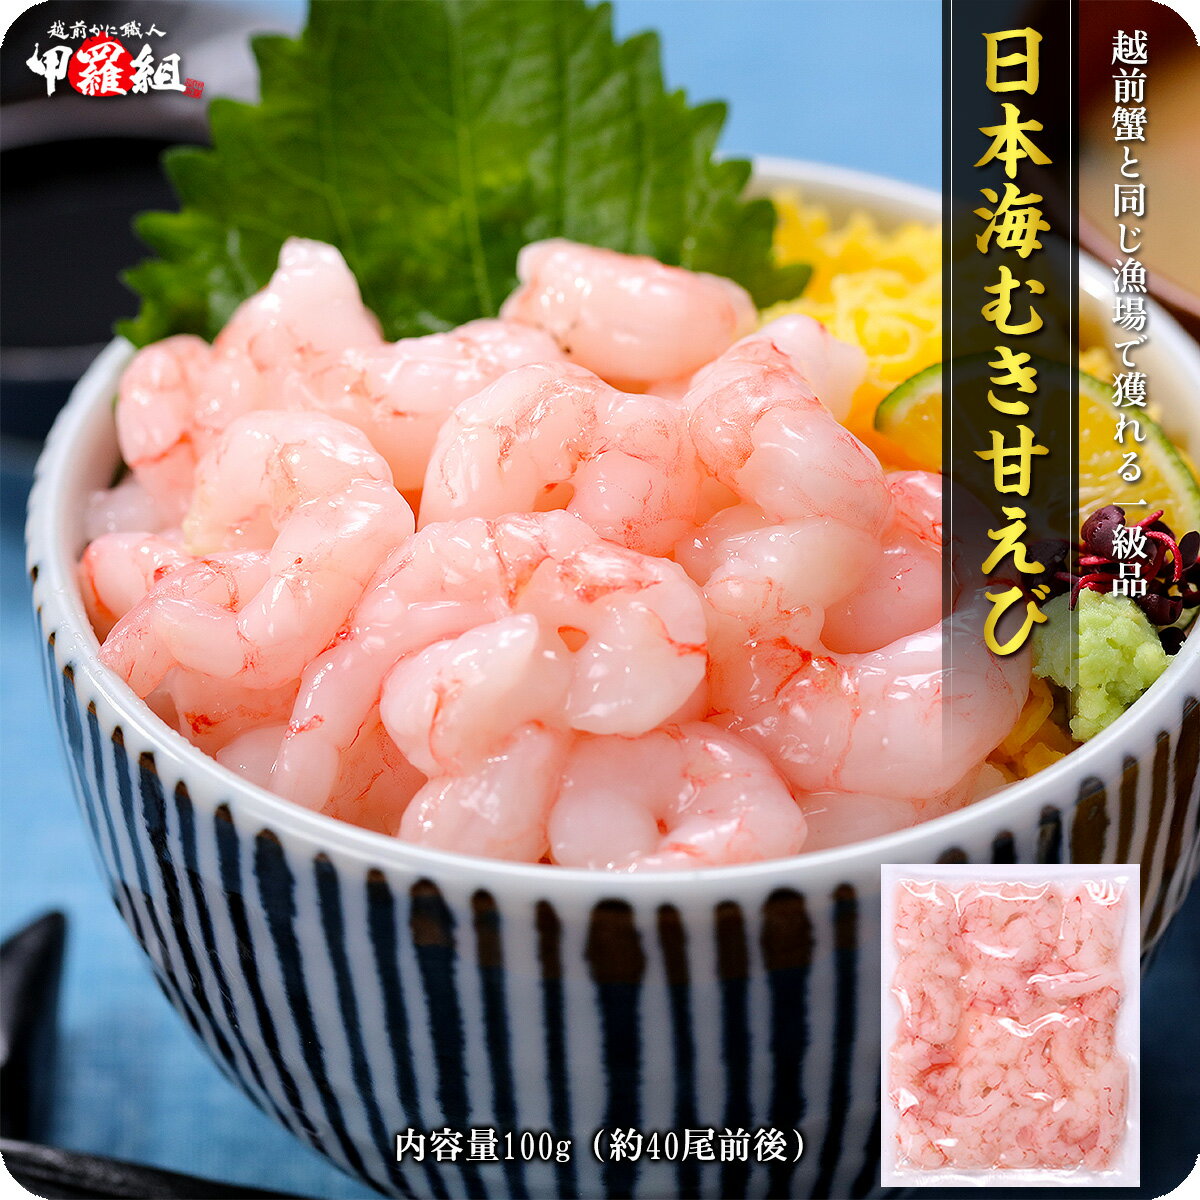 日本海むき甘えび100g 訳あり小サイズ数量限定品※手むき加工のため殻やヒゲ混入する場合があります。